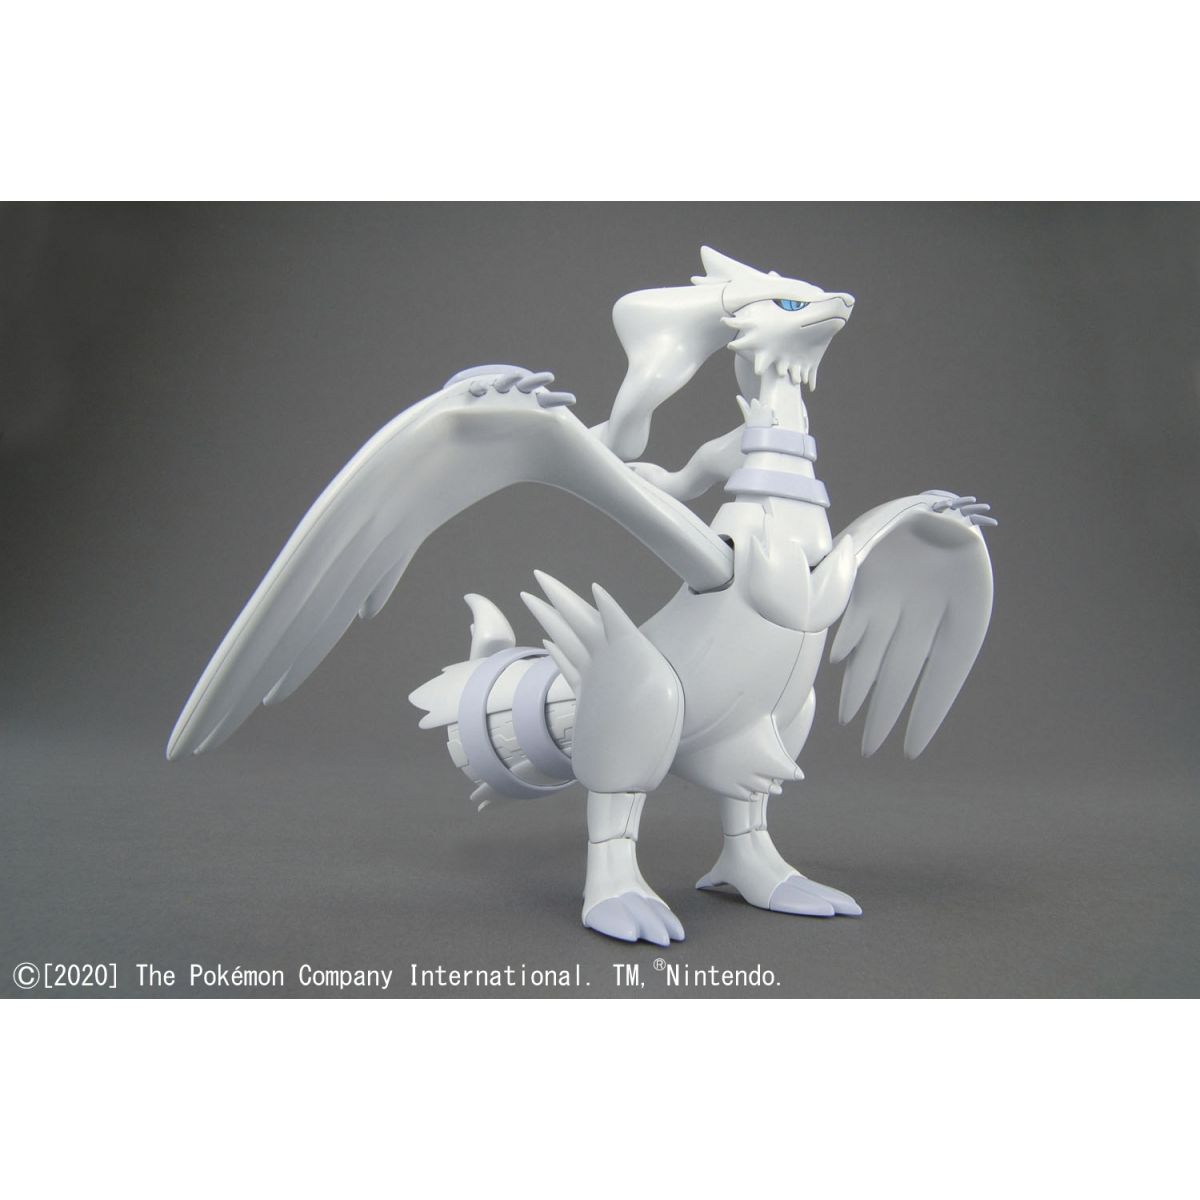 Reshiram (Pokemon Black & White) Bandai Spirits Model Kit